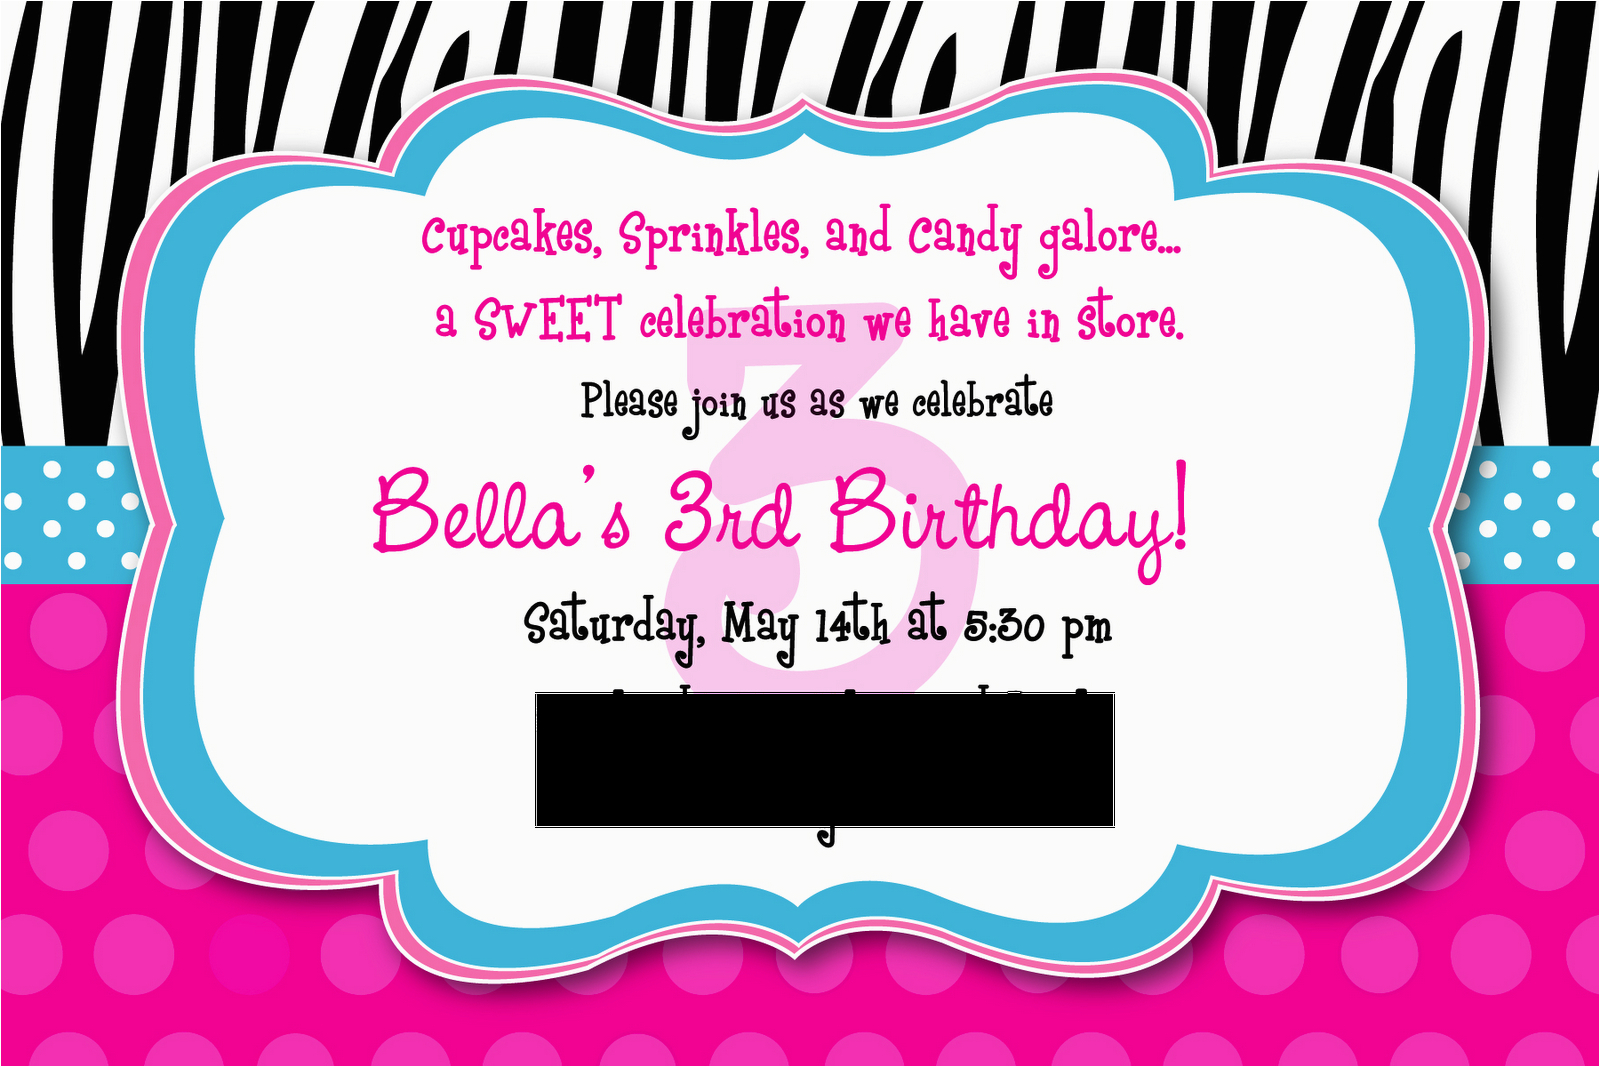 reminder birthday invitation best party ideas